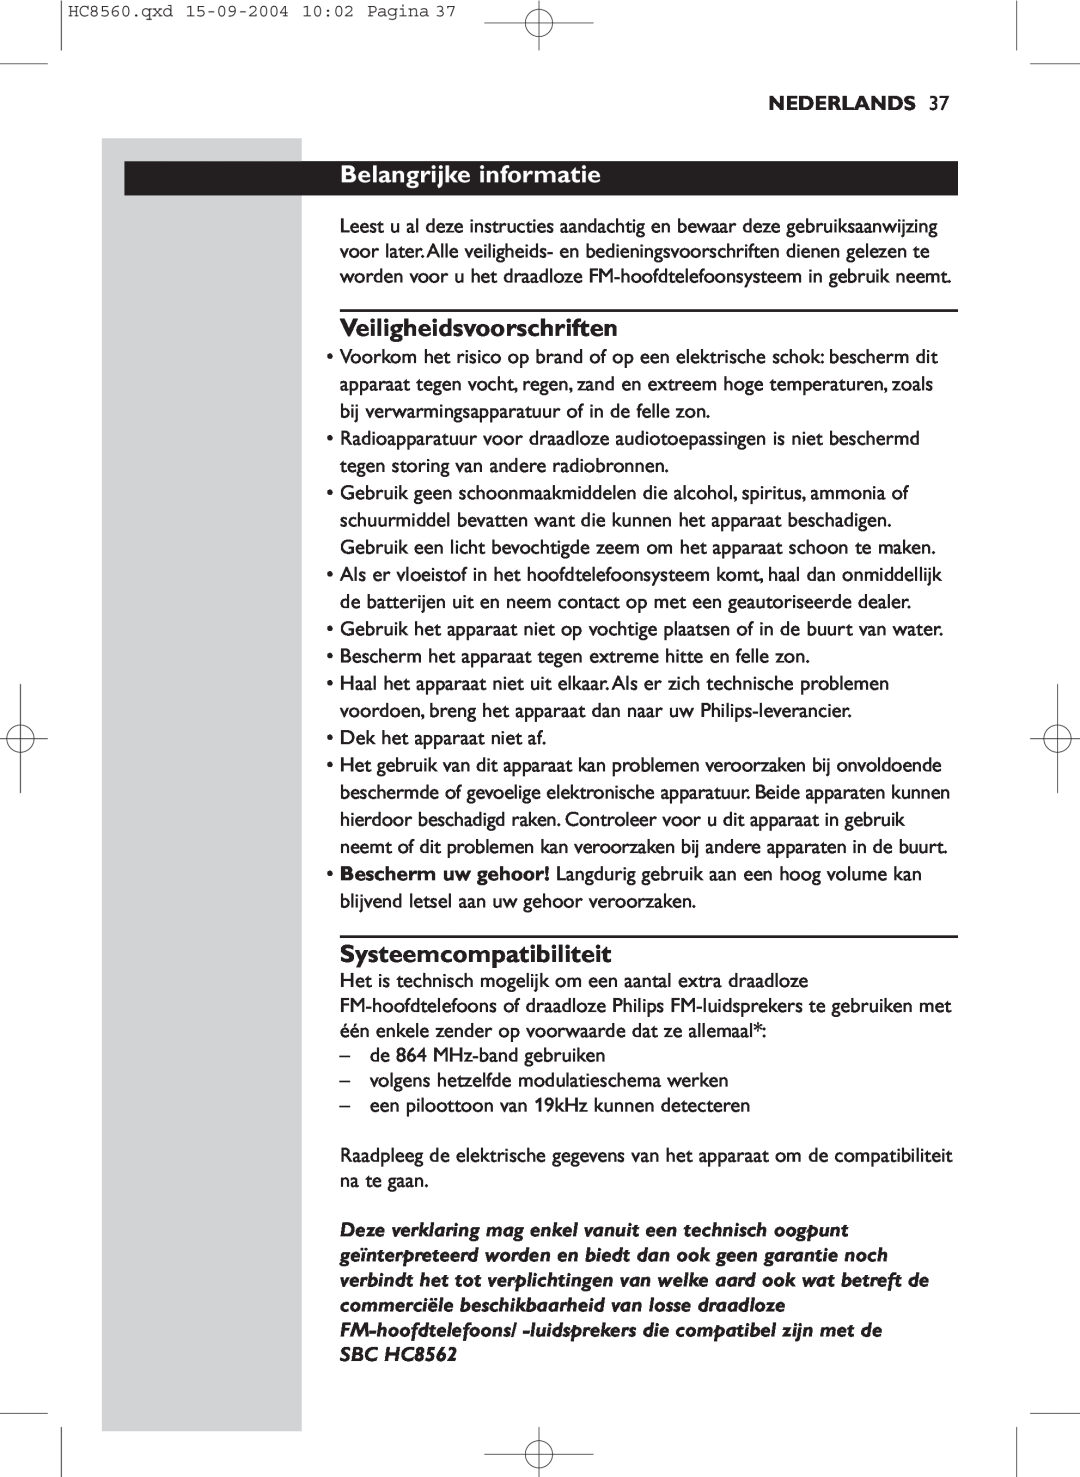 Philips HC 8560 manual Belangrijke informatie, Veiligheidsvoorschriften, Systeemcompatibiliteit, Nederlands 